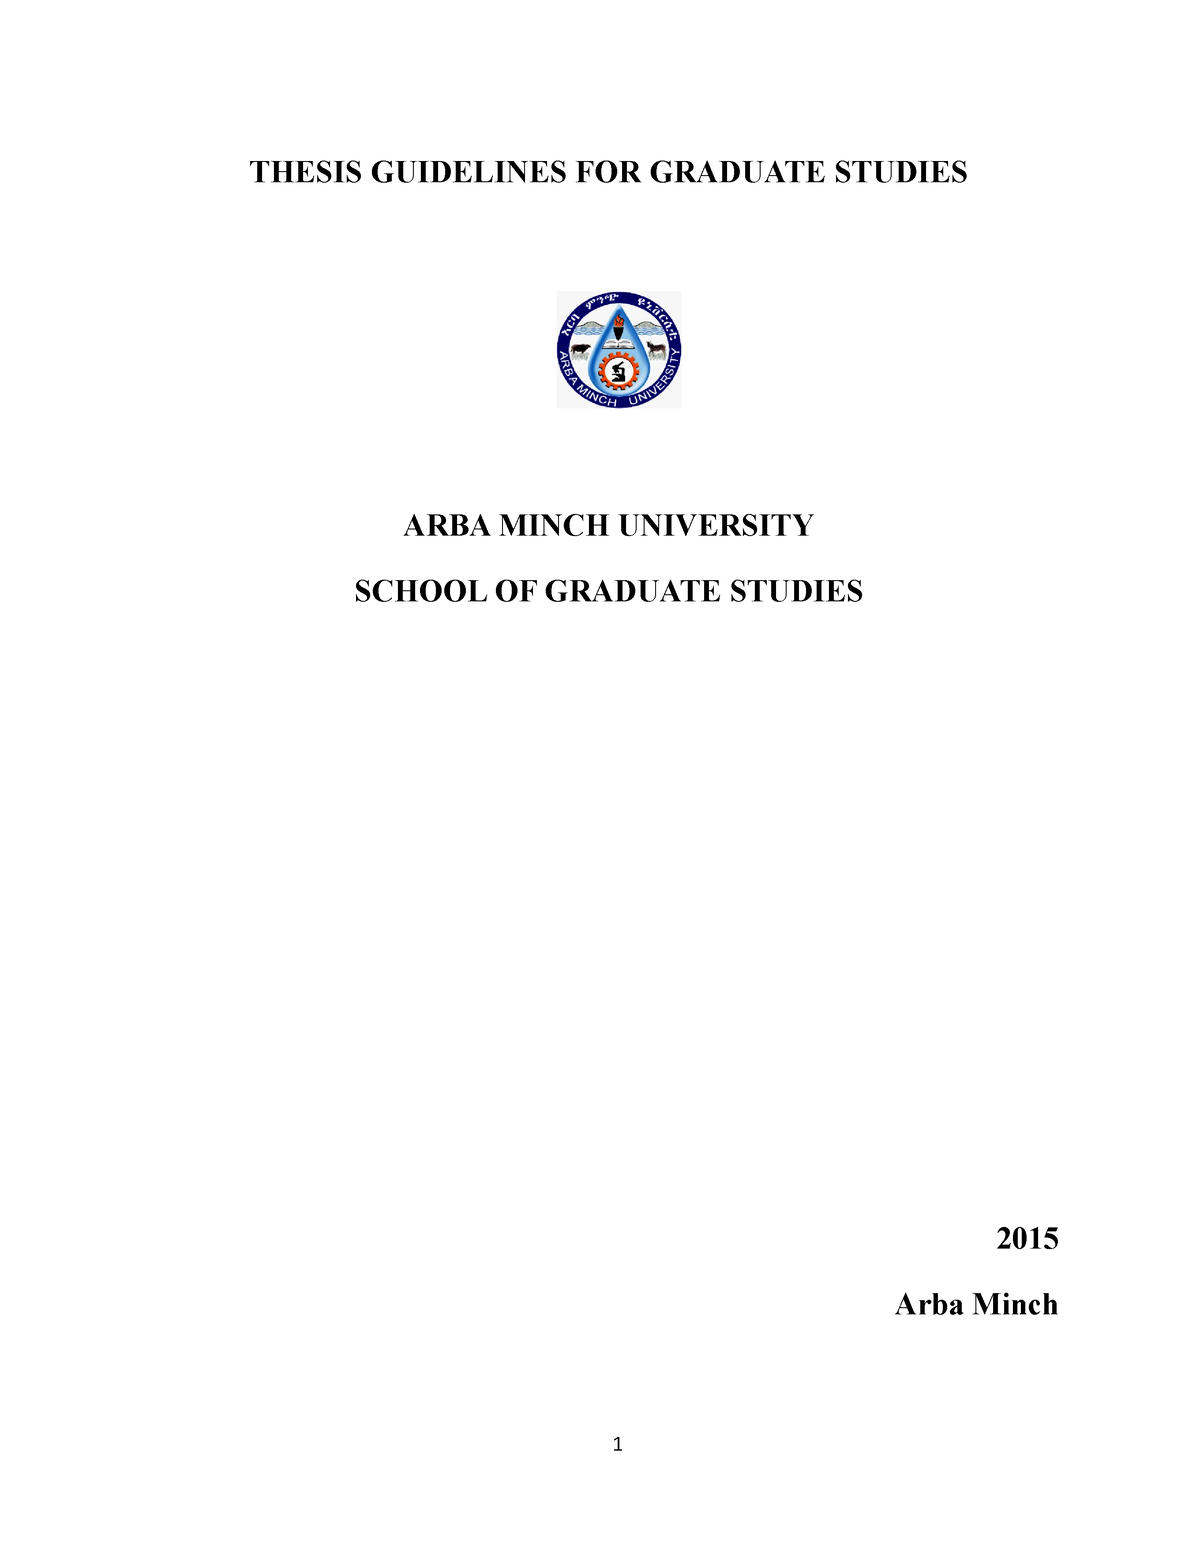 ub thesis guide pdf